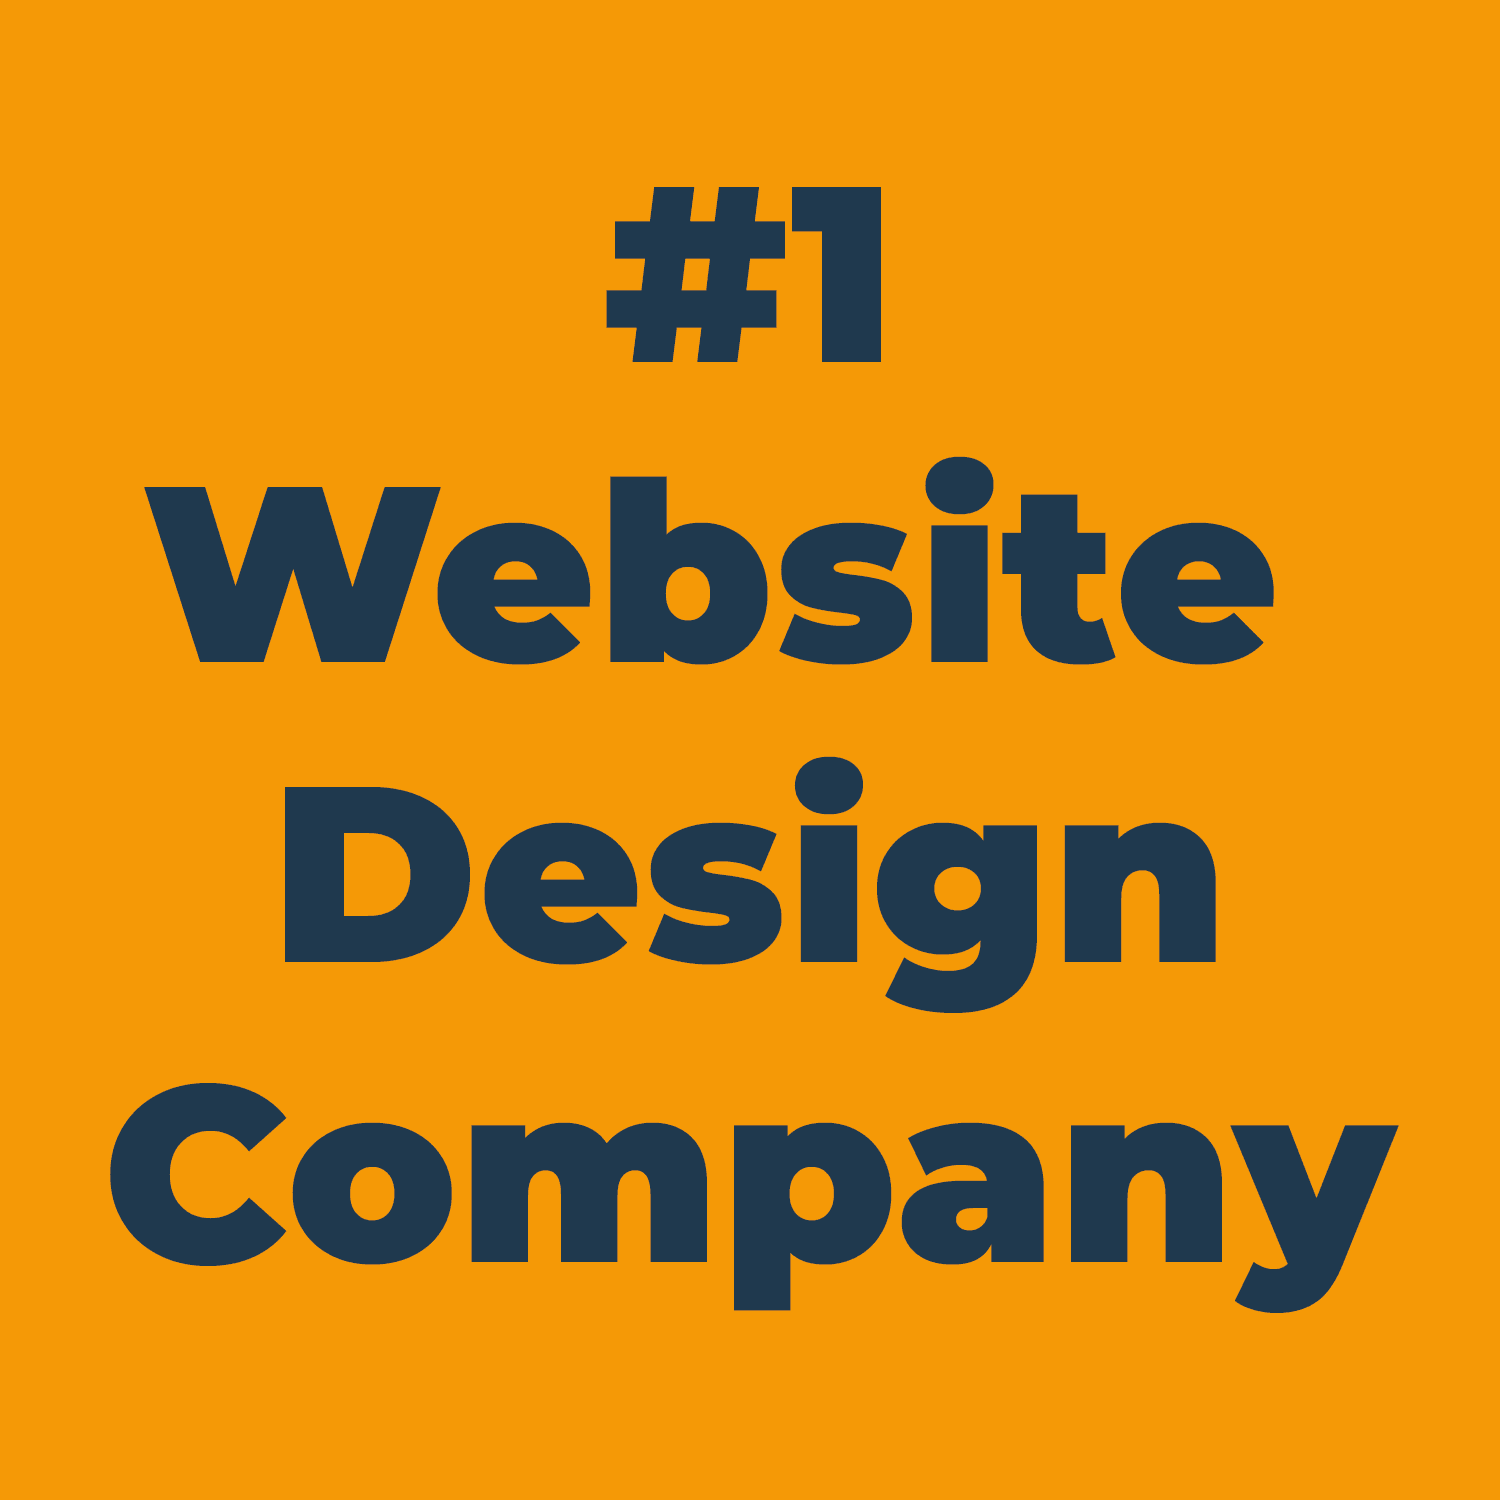 Number 1 website design company